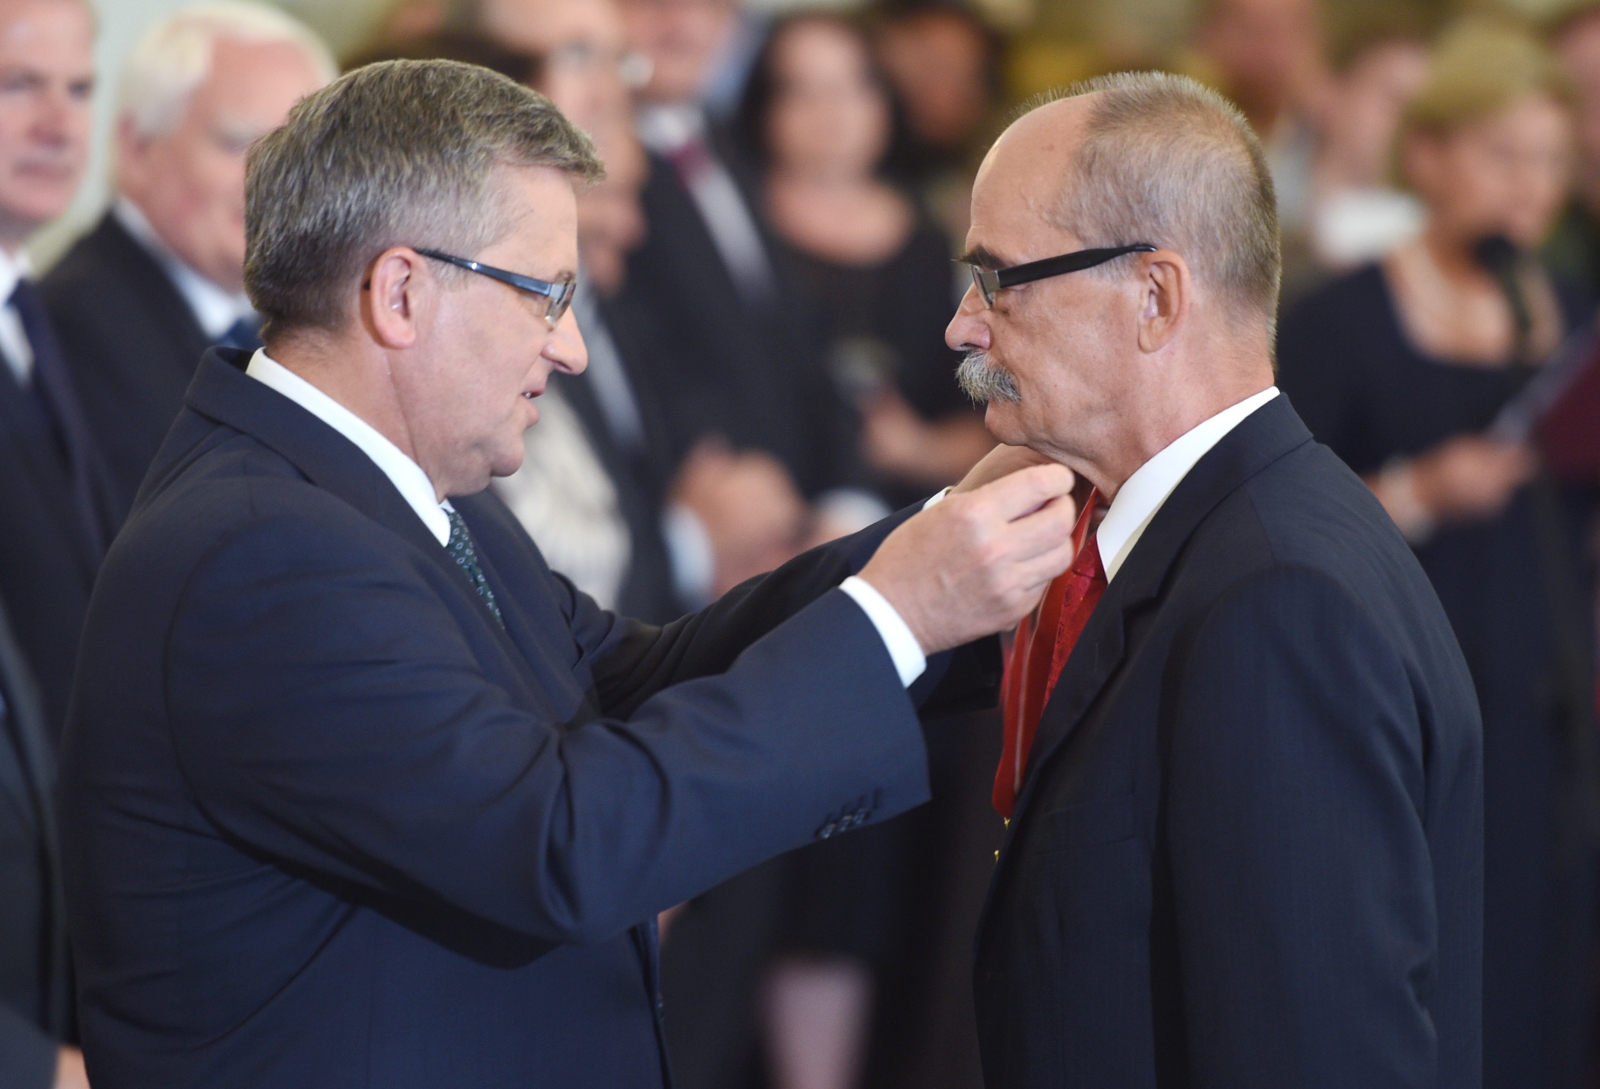 Prezydent Bronisław Komorowski odznaczył generała dywizji Sił Zbrojnych RP prof. Bolesława Balcerowicza Krzyżem Oficerskim Orderu Odrodzenia